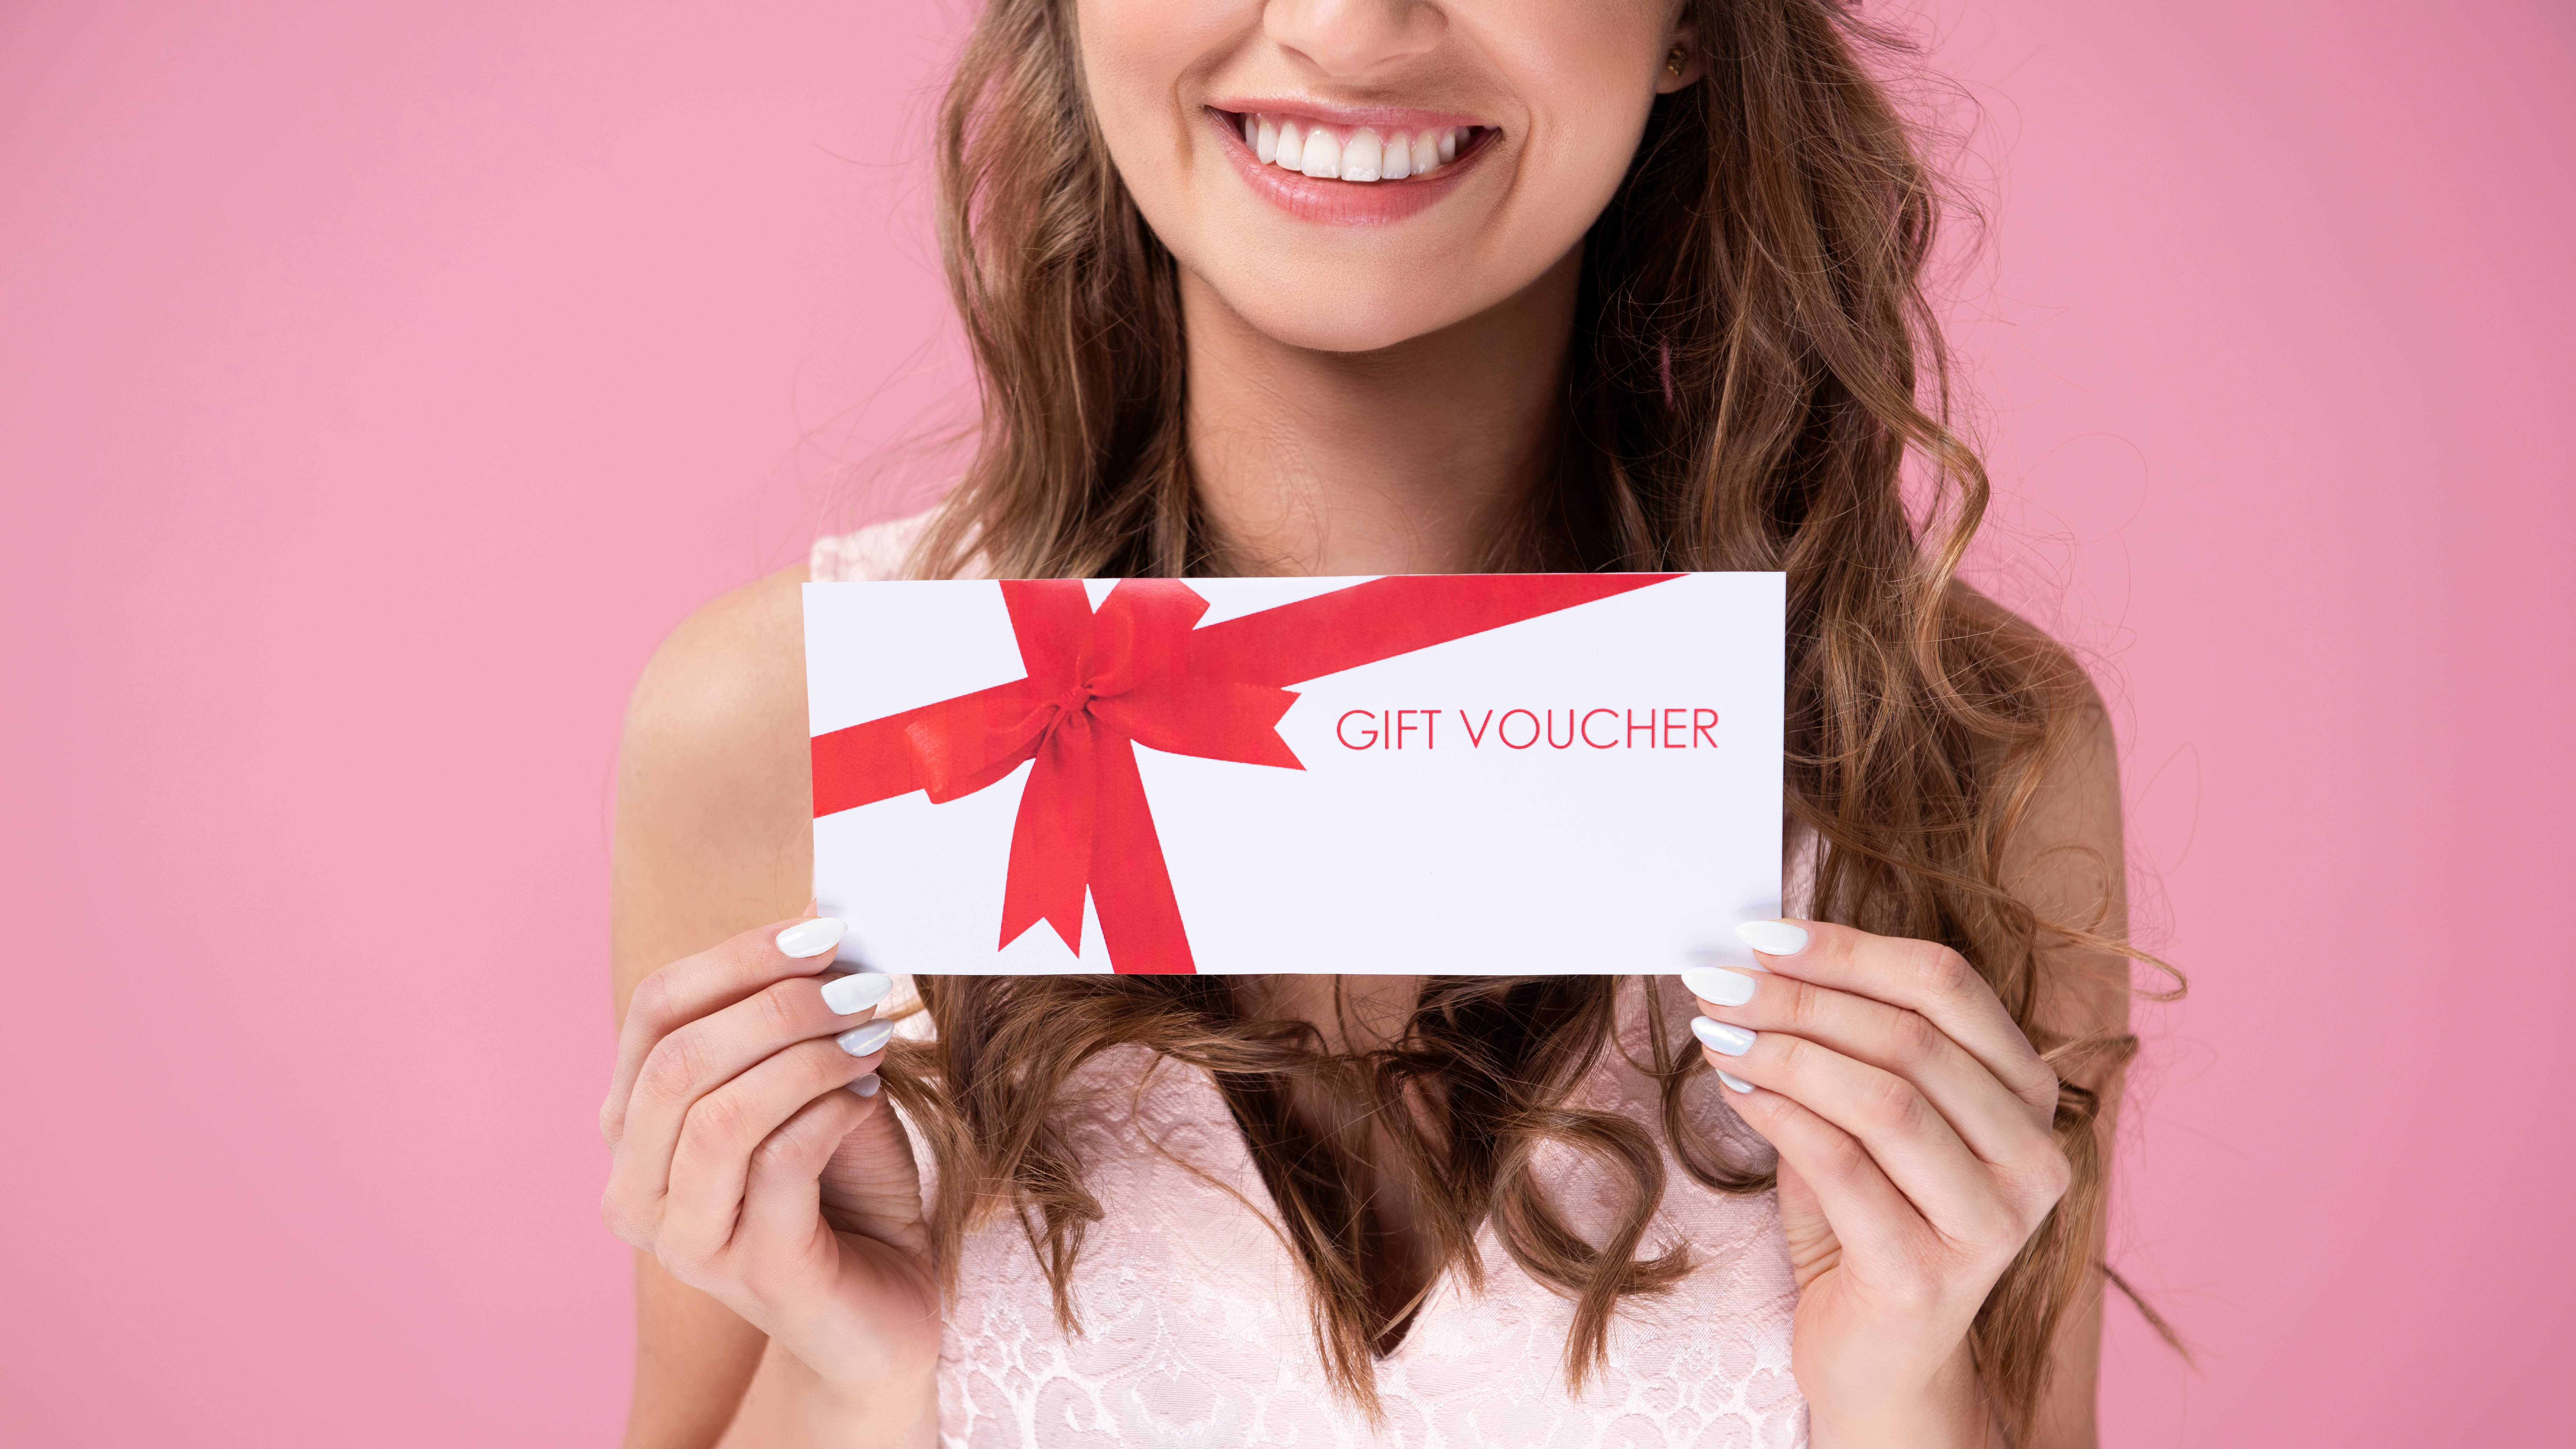 A woman holding a gift voucher